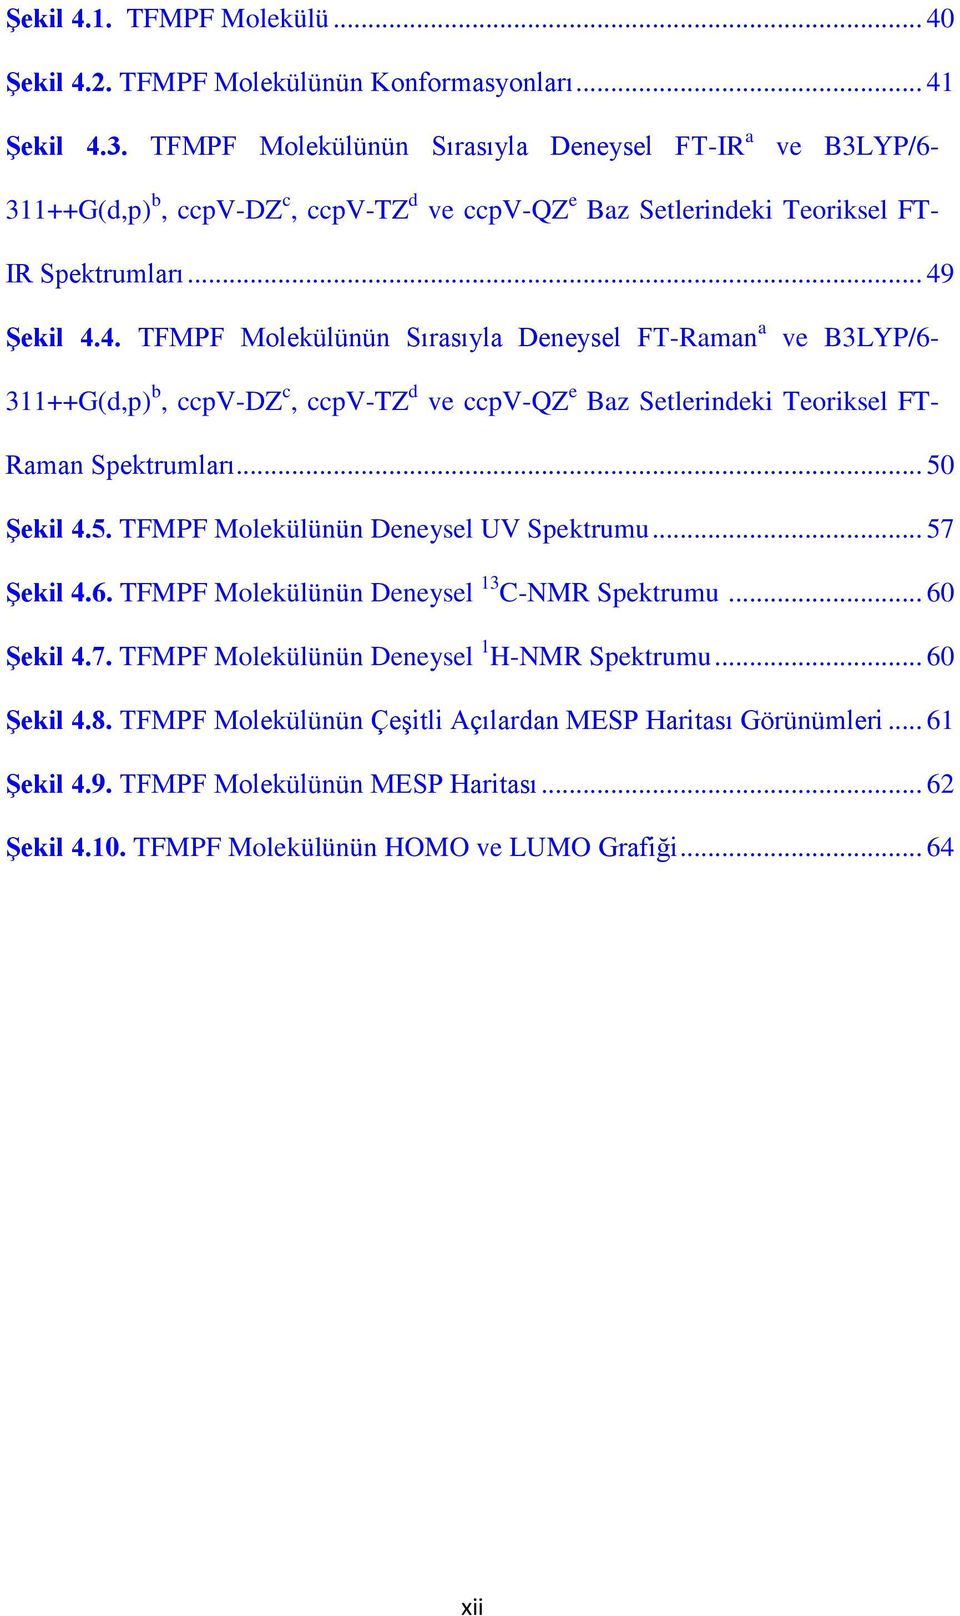 Şekil 4.4. TFMPF Molekülünün Sırasıyla Deneysel FT-Raman a ve B3LYP/6-311++G(d,p) b, ccpv-dz c, ccpv-tz d ve ccpv-qz e Baz Setlerindeki Teoriksel FT- Raman Spektrumları... 50